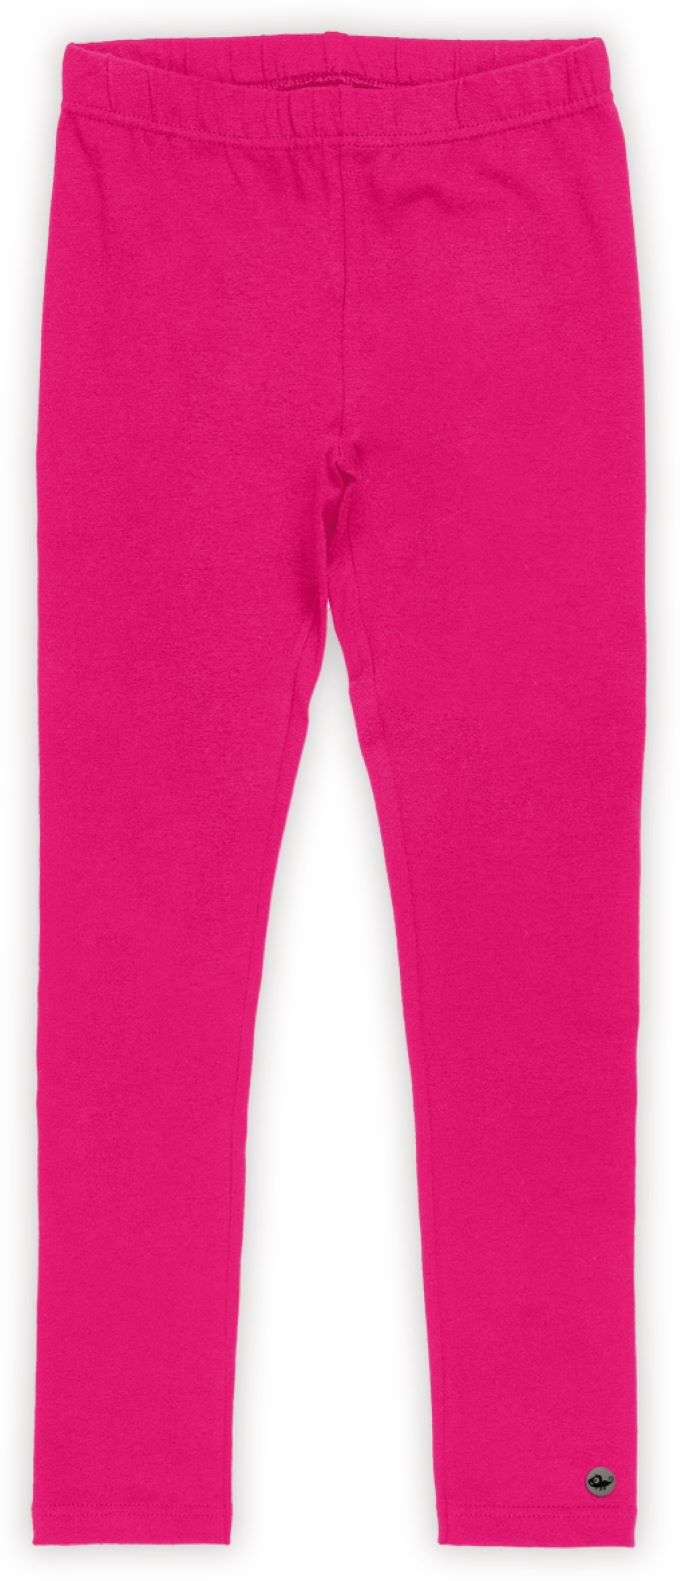 Legging em algodão pink - Tam 4 a 10 anos